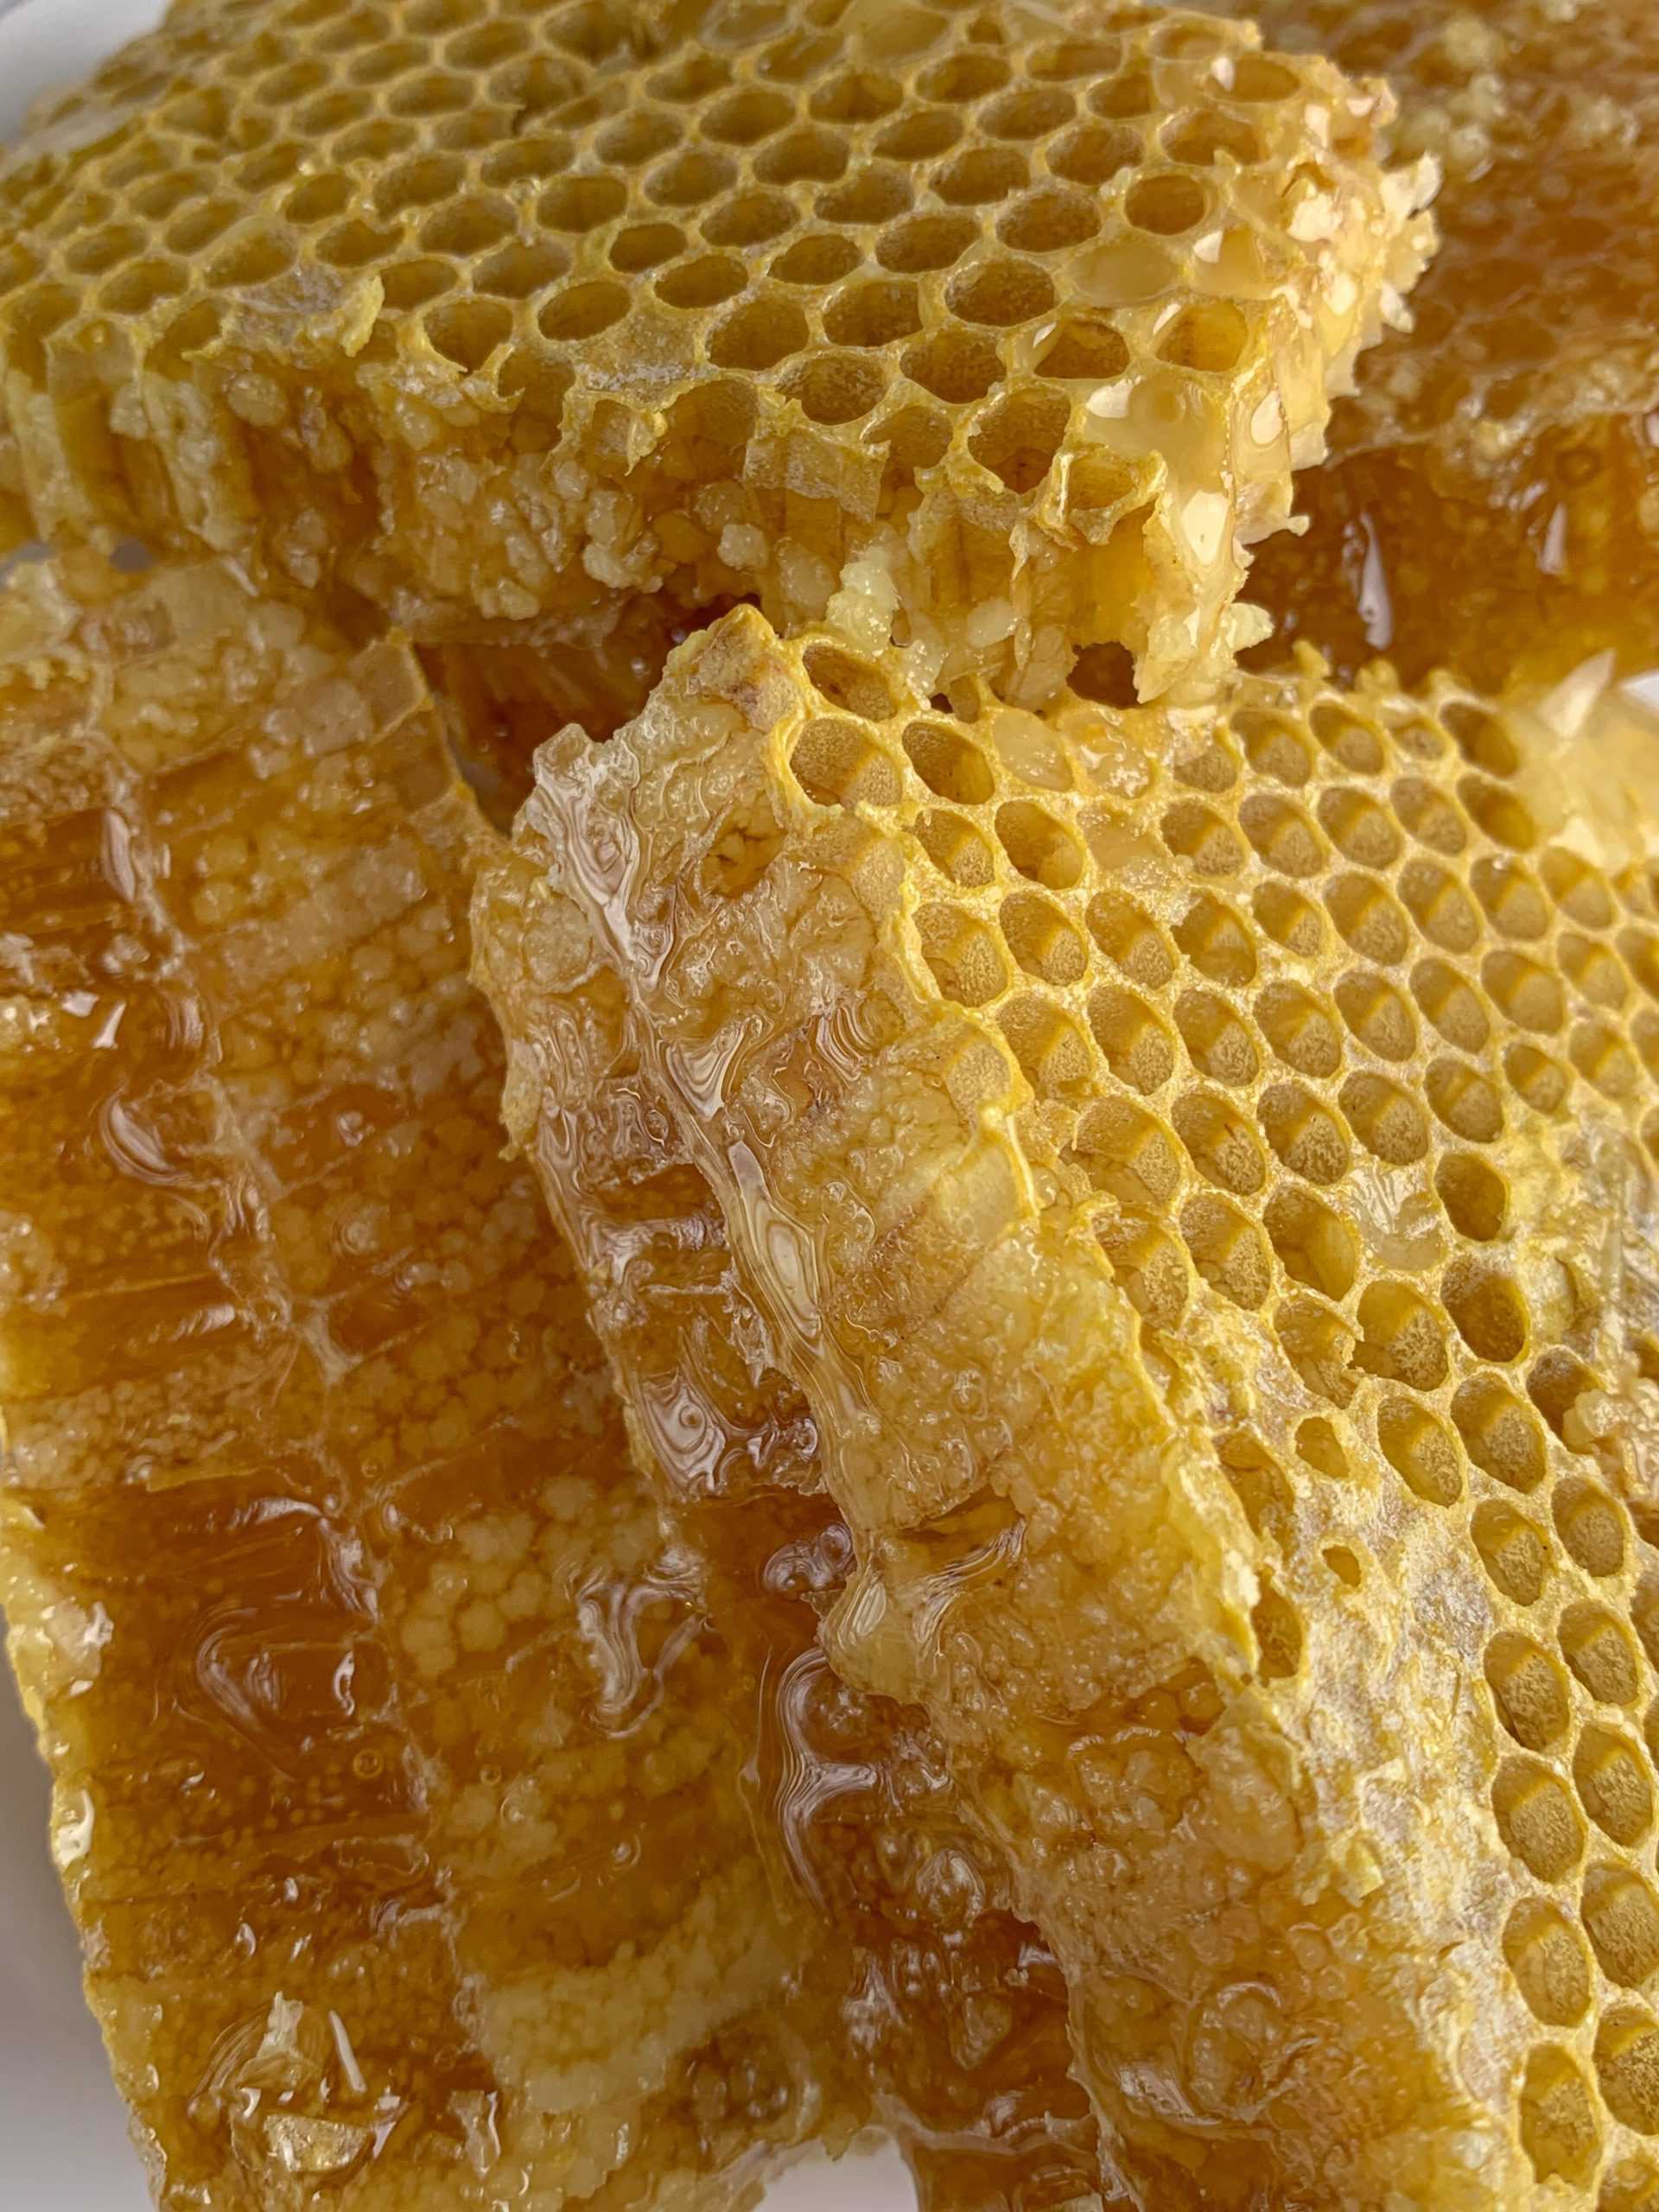 Panal de miel de abeja 2021- qué es, cómo tomarlo, propiedades y más!